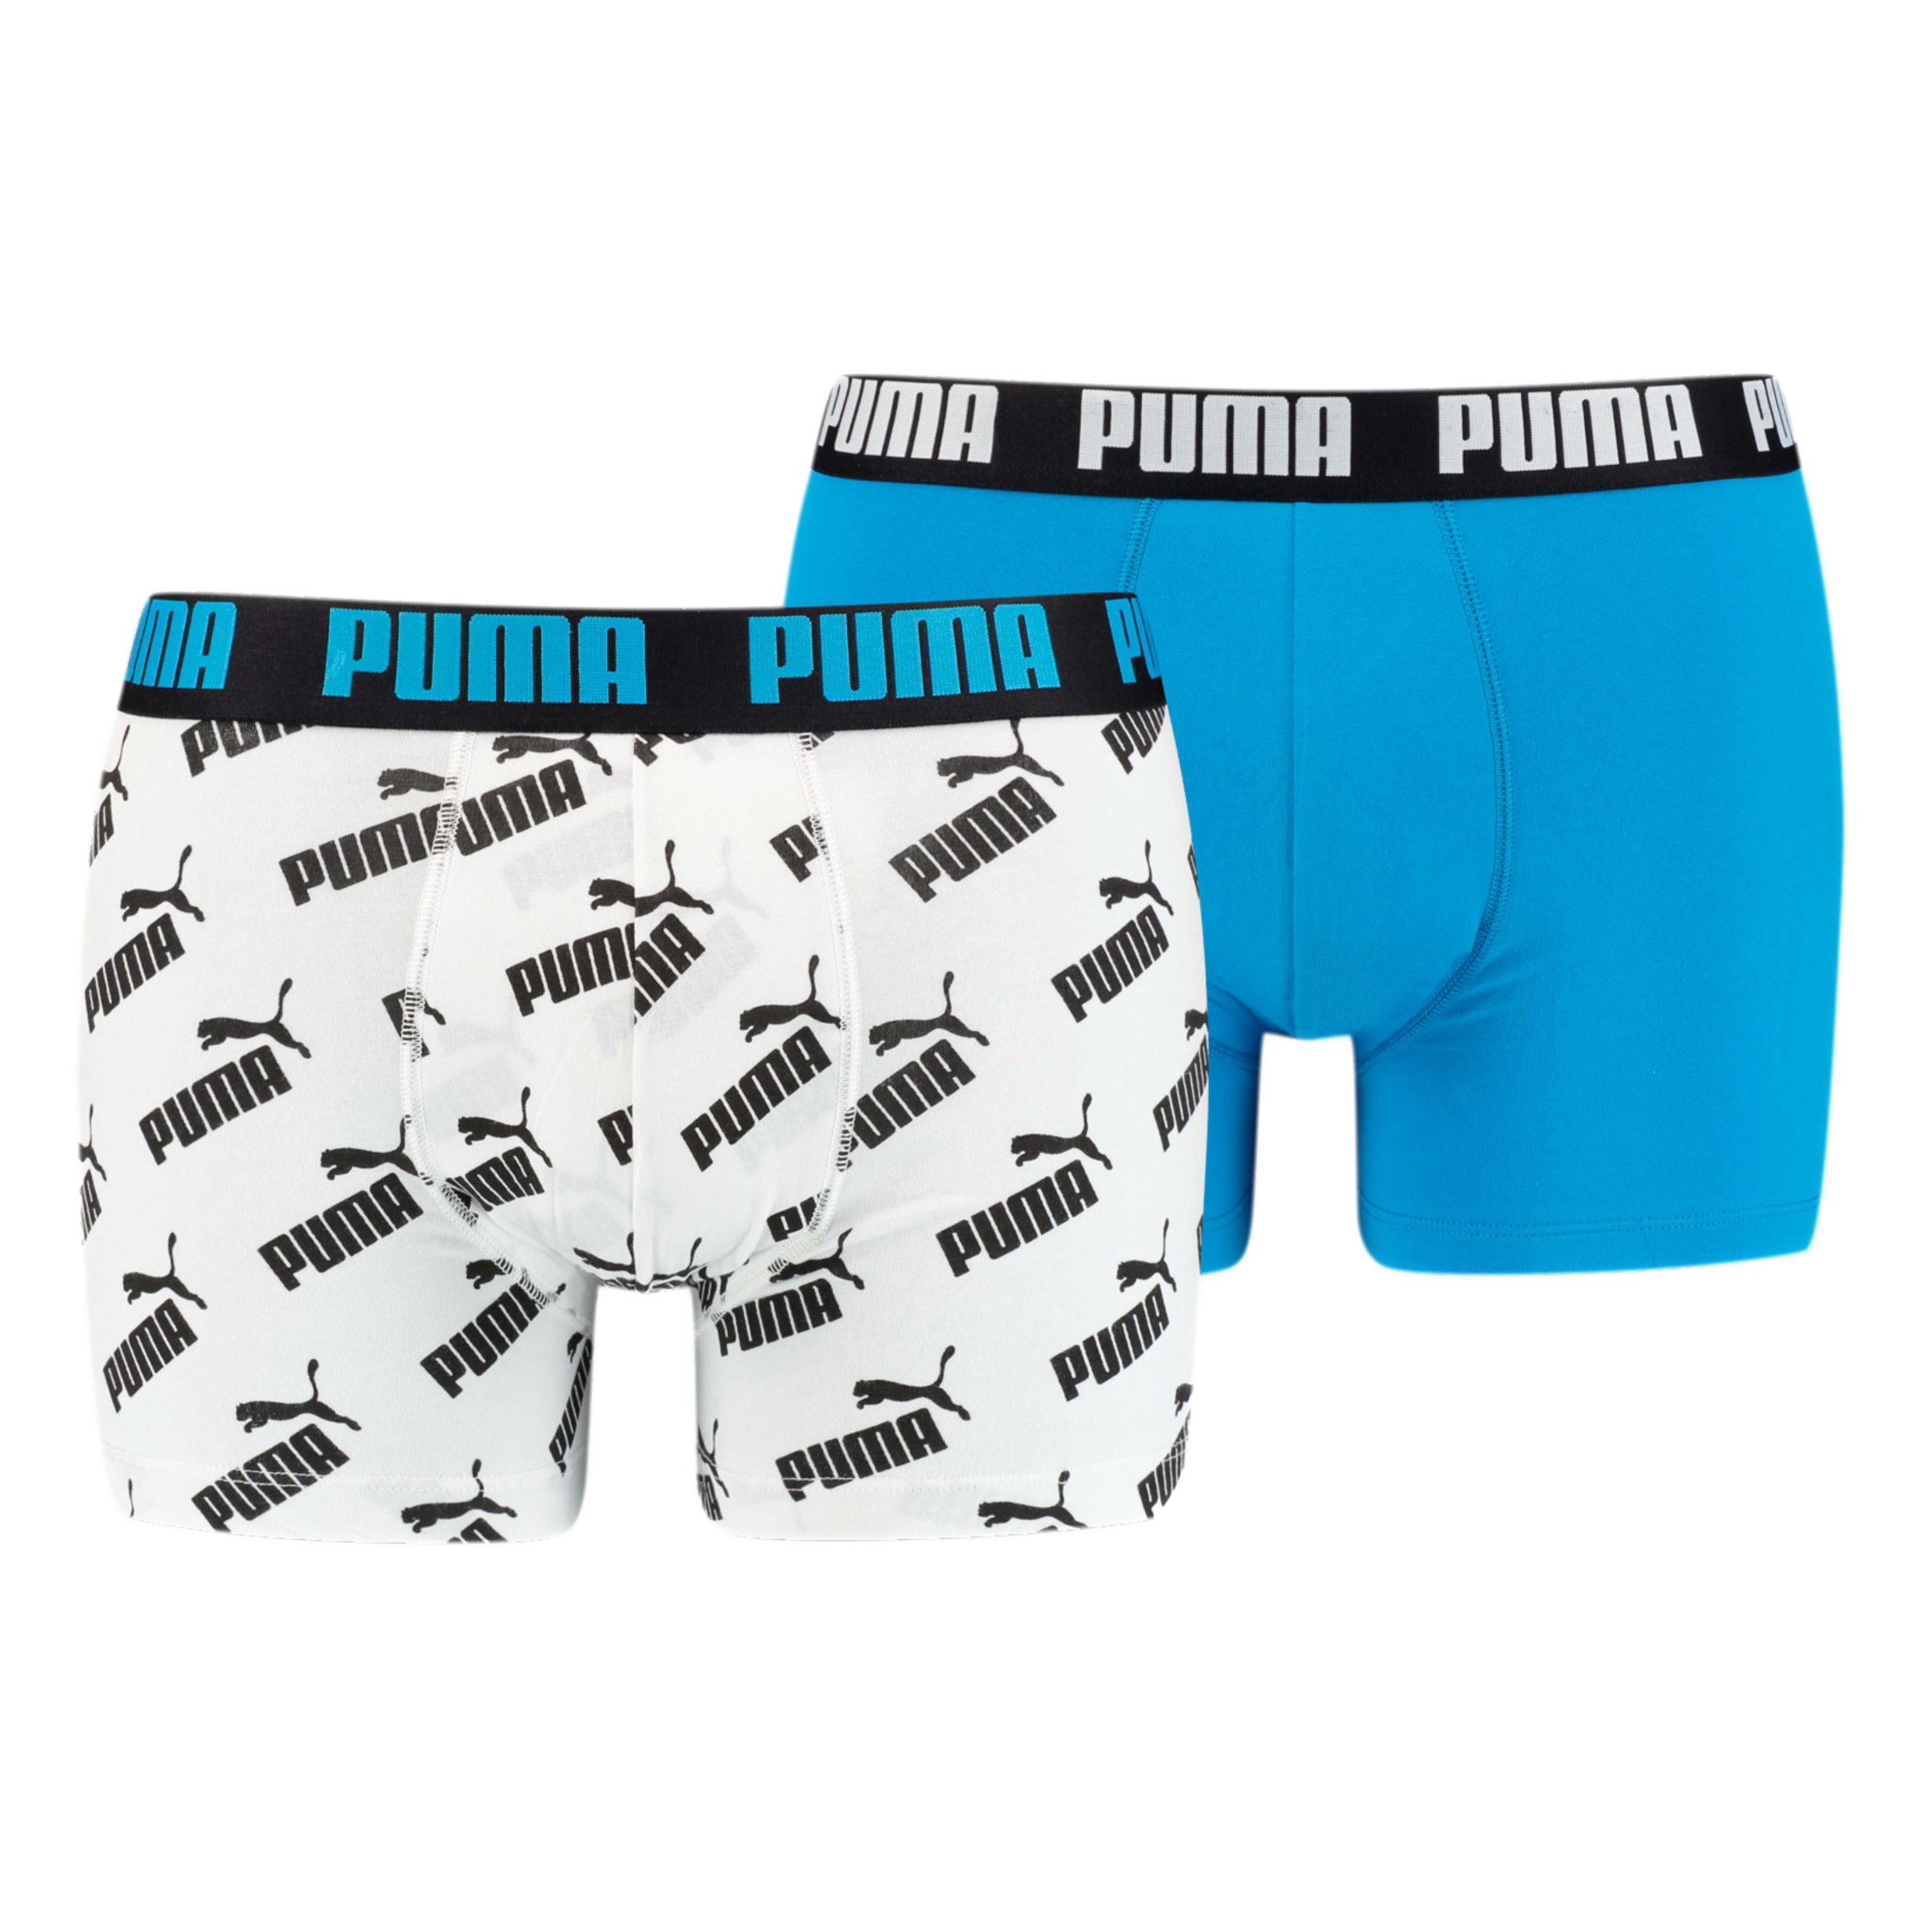 Calzoncillos de boxer Puma 2 Pack Basic Boxers Aqua Blue